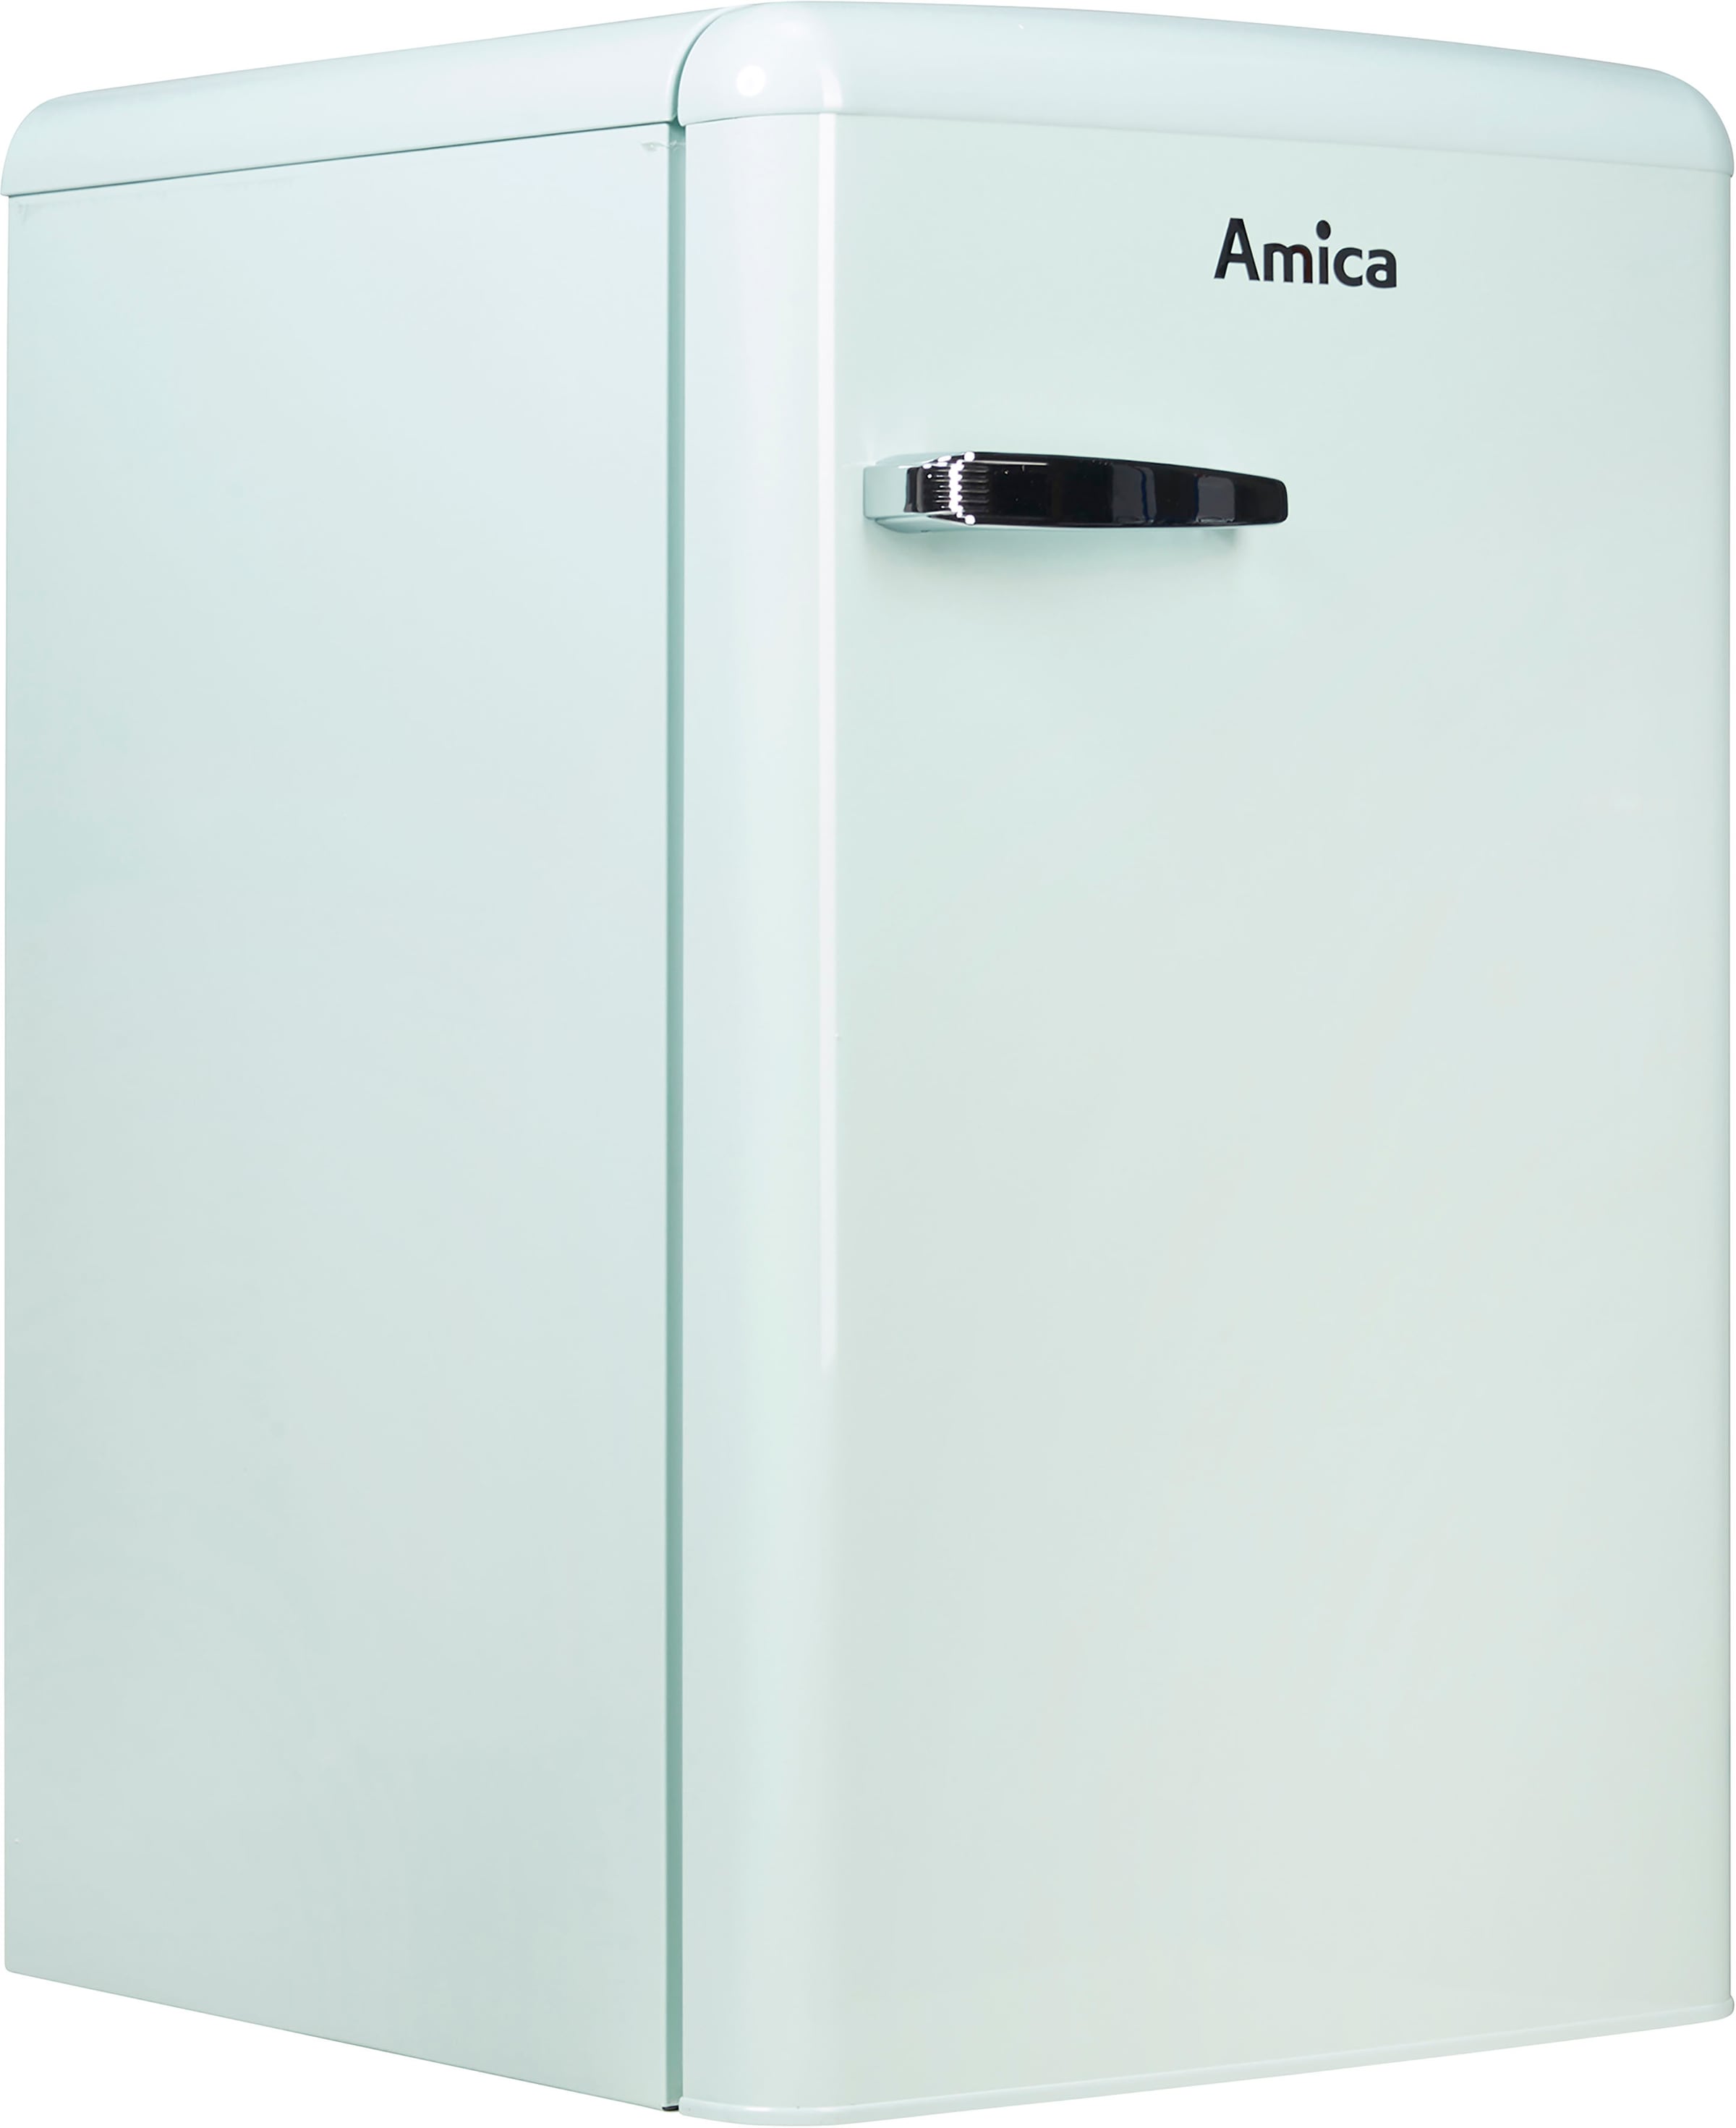 Amica Vollraumkühlschrank, VKS 15622-1 T, 87,5 cm hoch, 55 cm breit jetzt  online bei OTTO